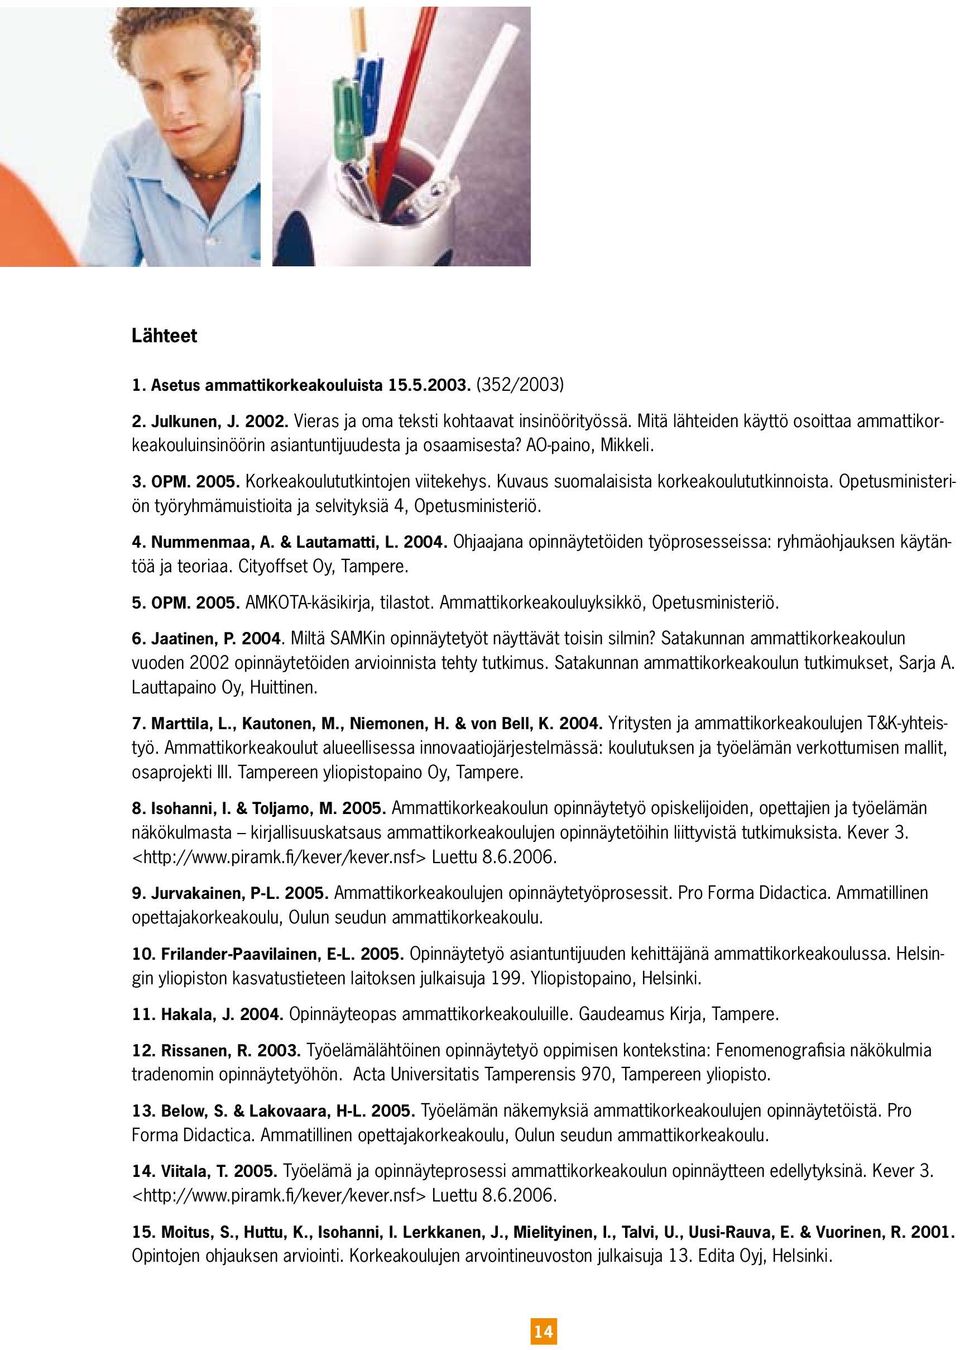 Kuvaus suomalaisista korkeakoulututkinnoista. Opetusministeriön työryhmämuistioita ja selvityksiä 4, Opetusministeriö. 4. Nummenmaa, A. & Lautamatti, L. 2004.